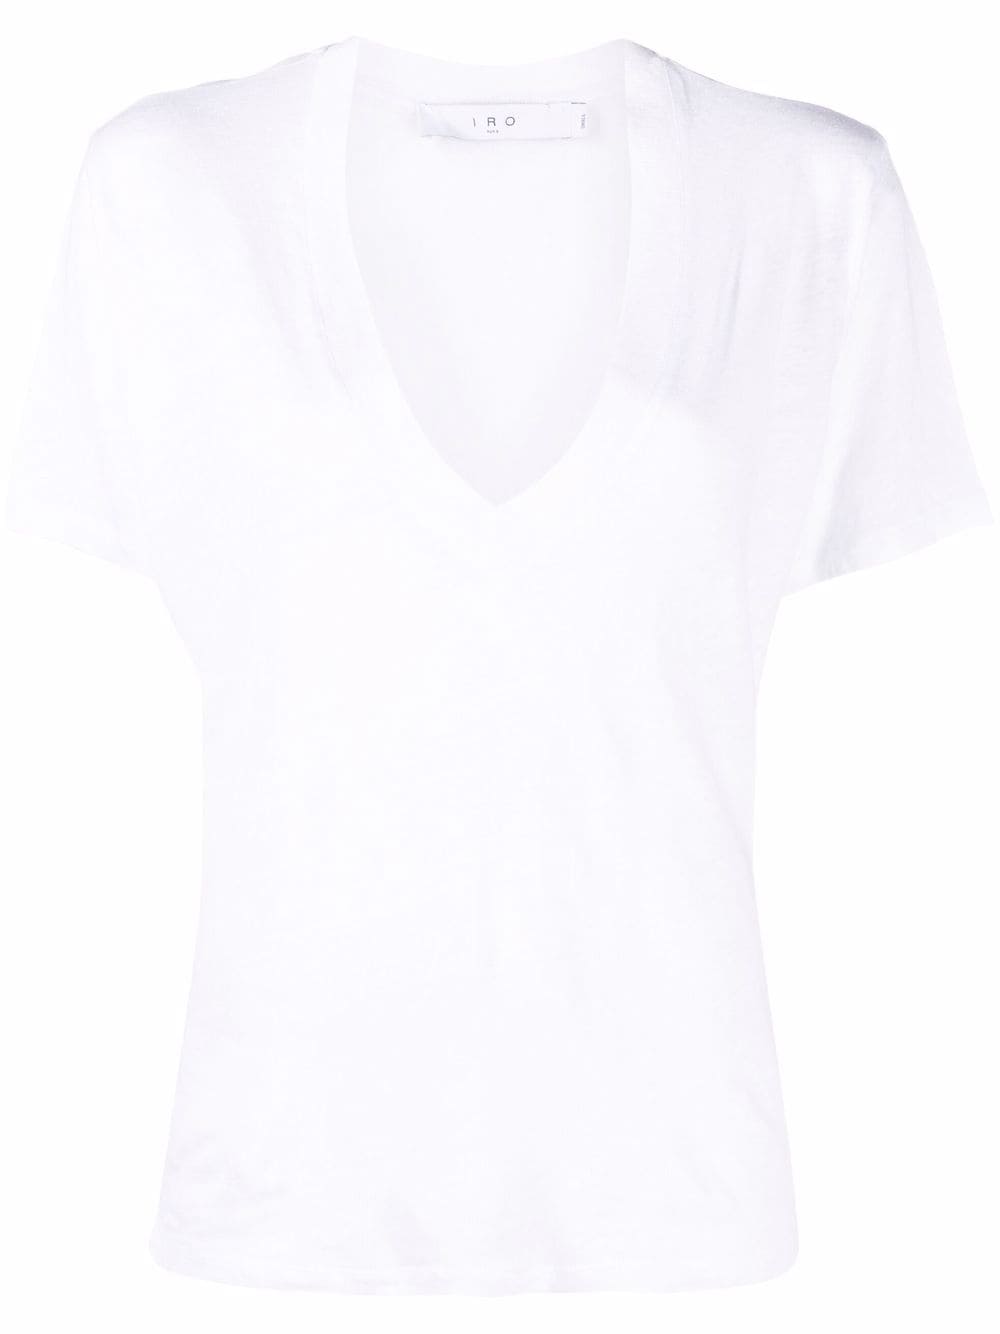 фото Iro футболка с v-образным вырезом